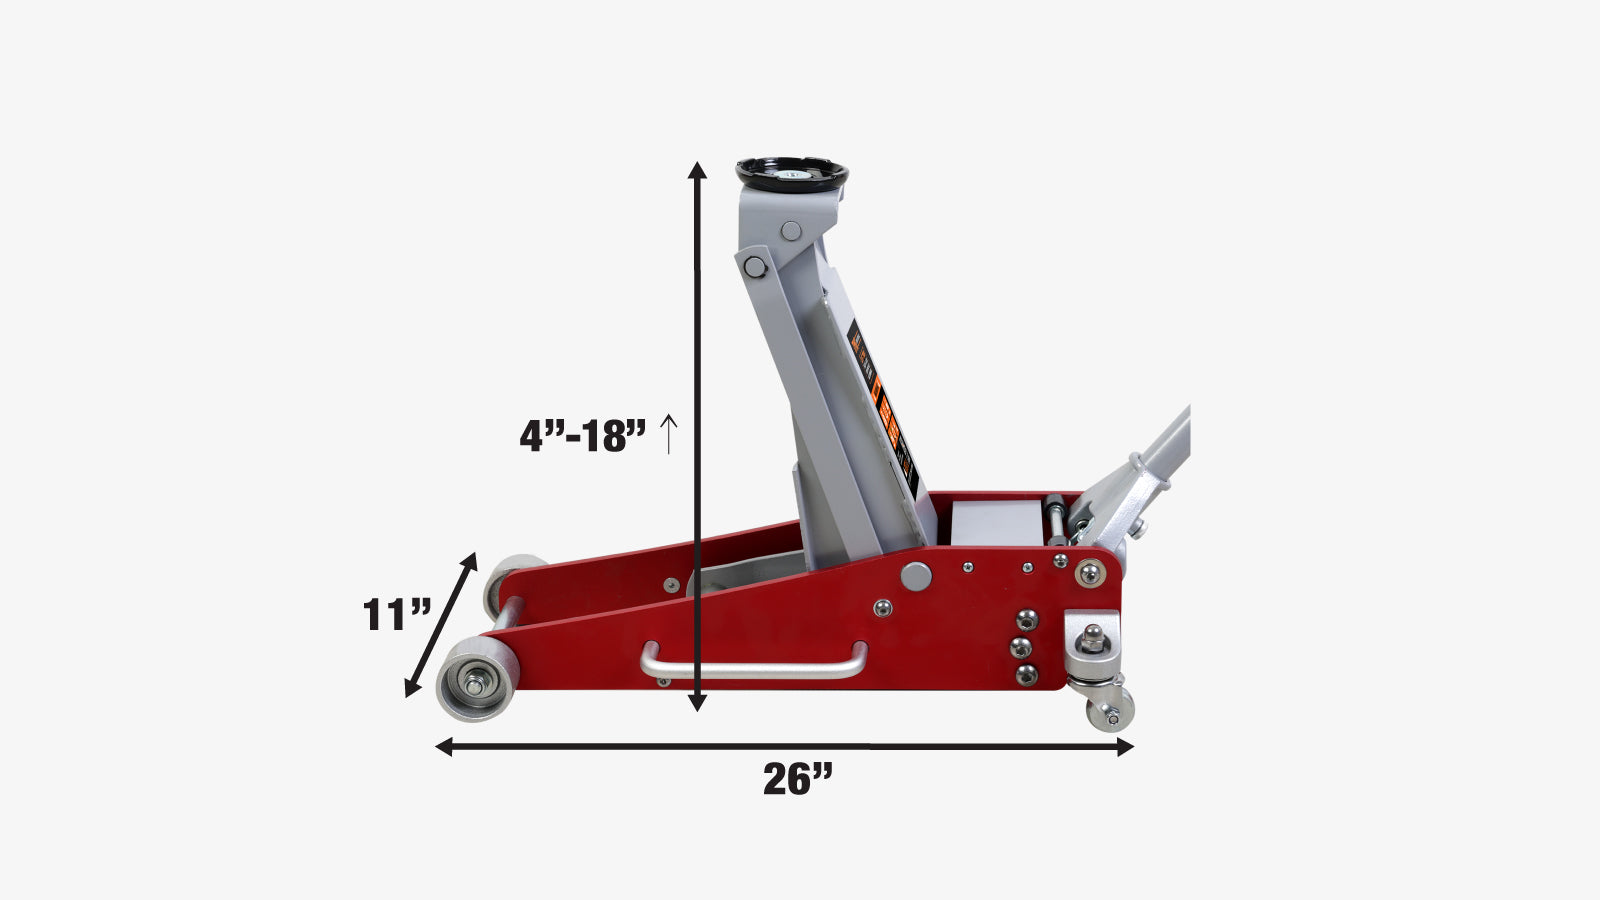 TMG Industrial Cric de plancher en aluminium à profil bas de 2,5 tonnes, 17 po max. Hauteur, dégagement de 4 po, pivot de roulette à 360°, TMG-AJF02A-specifications-image